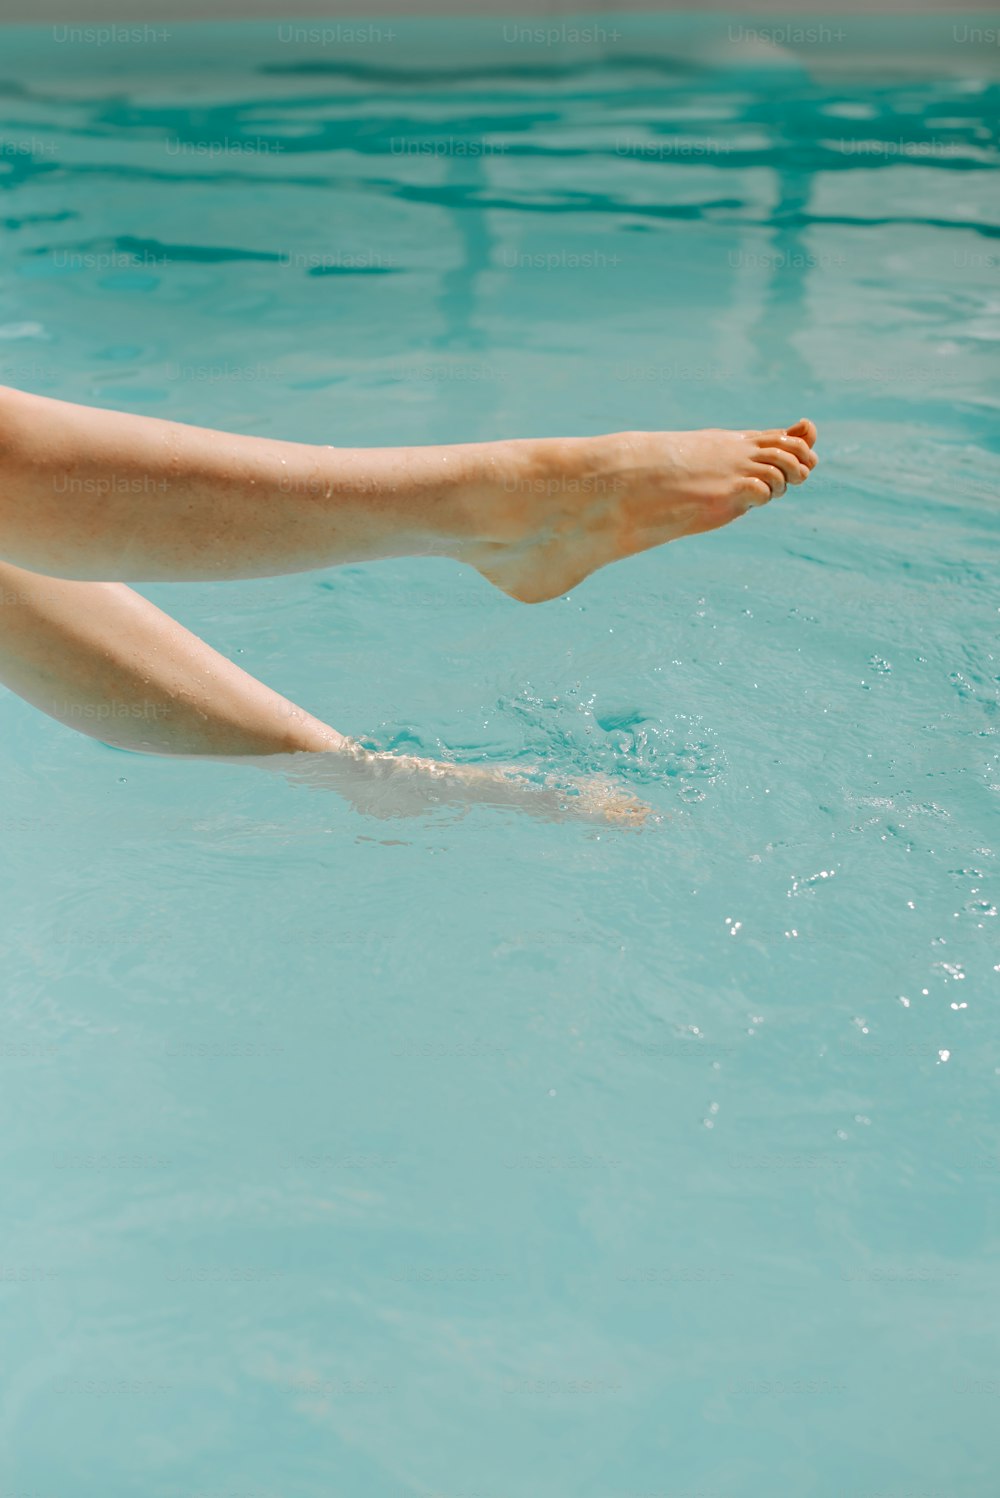 I piedi nudi di una donna che galleggiano in una pozza d'acqua